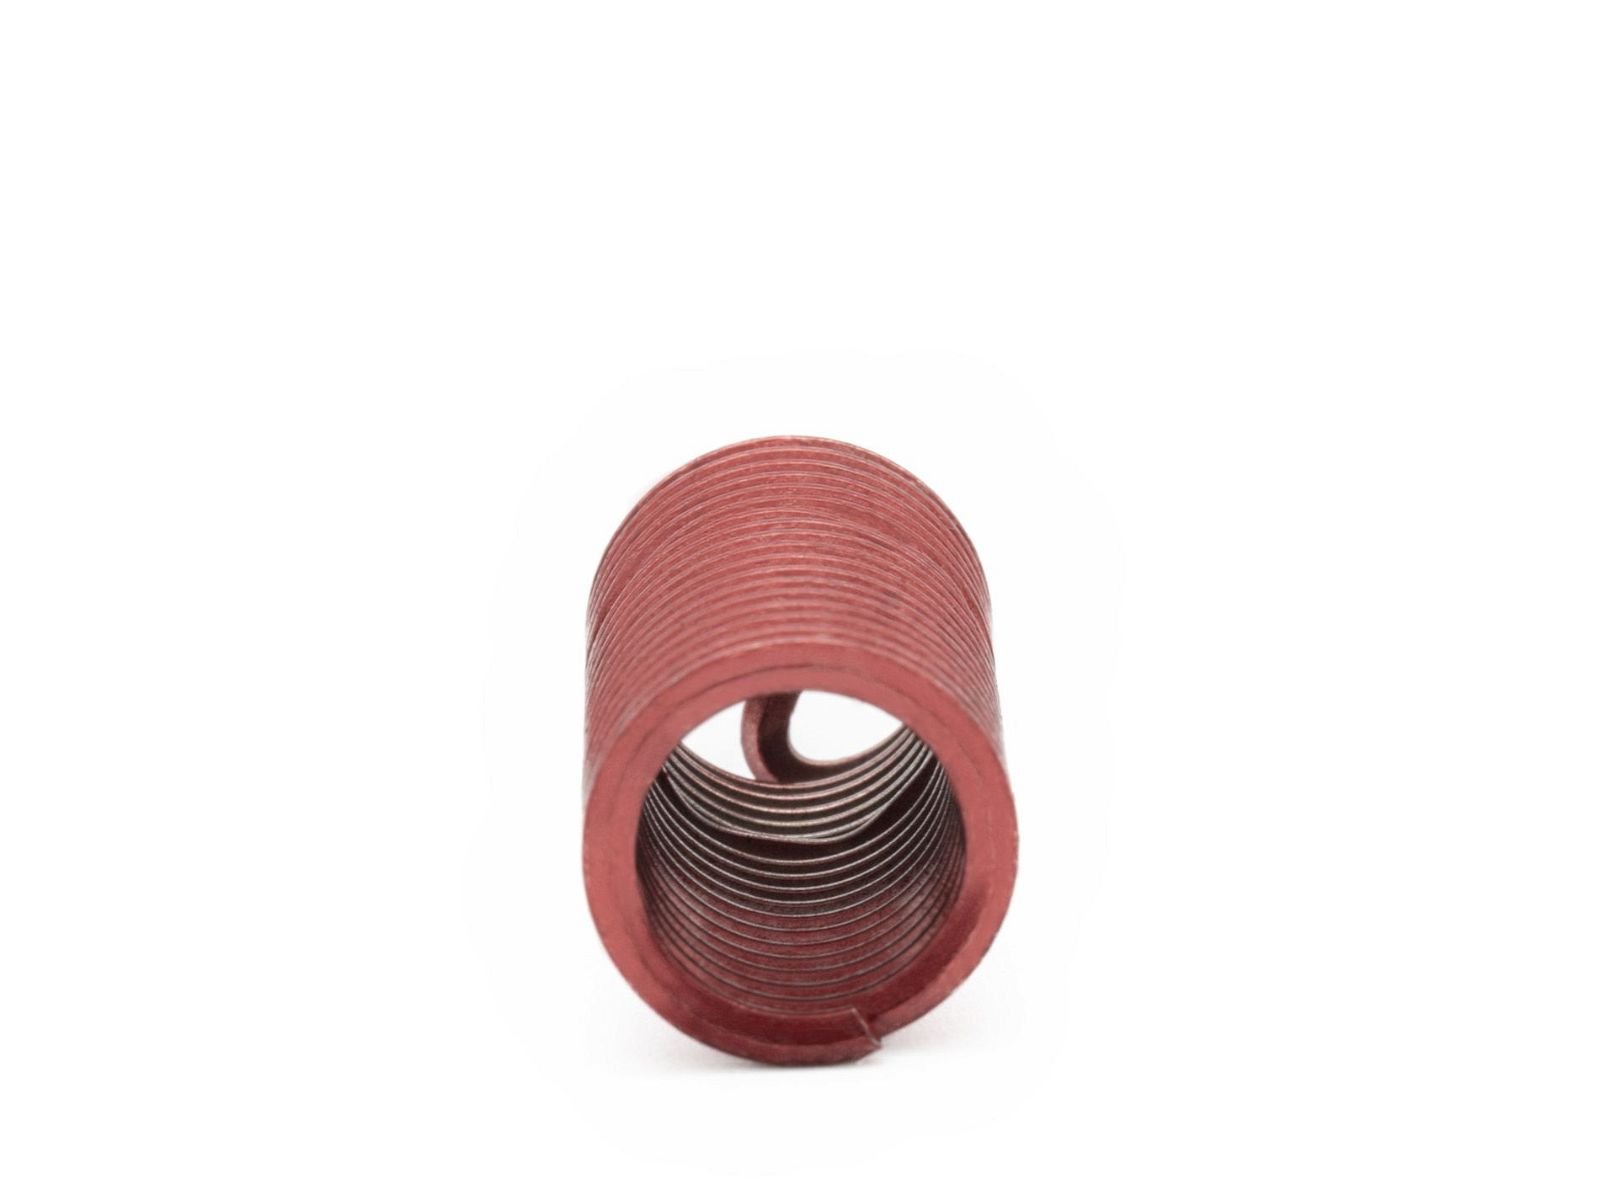 BaerCoil Wire Thread Inserts BSW 5/16 x 18 - 3.0 D (23.81 mm) - screw grip (screw locking) - 100 pcs.